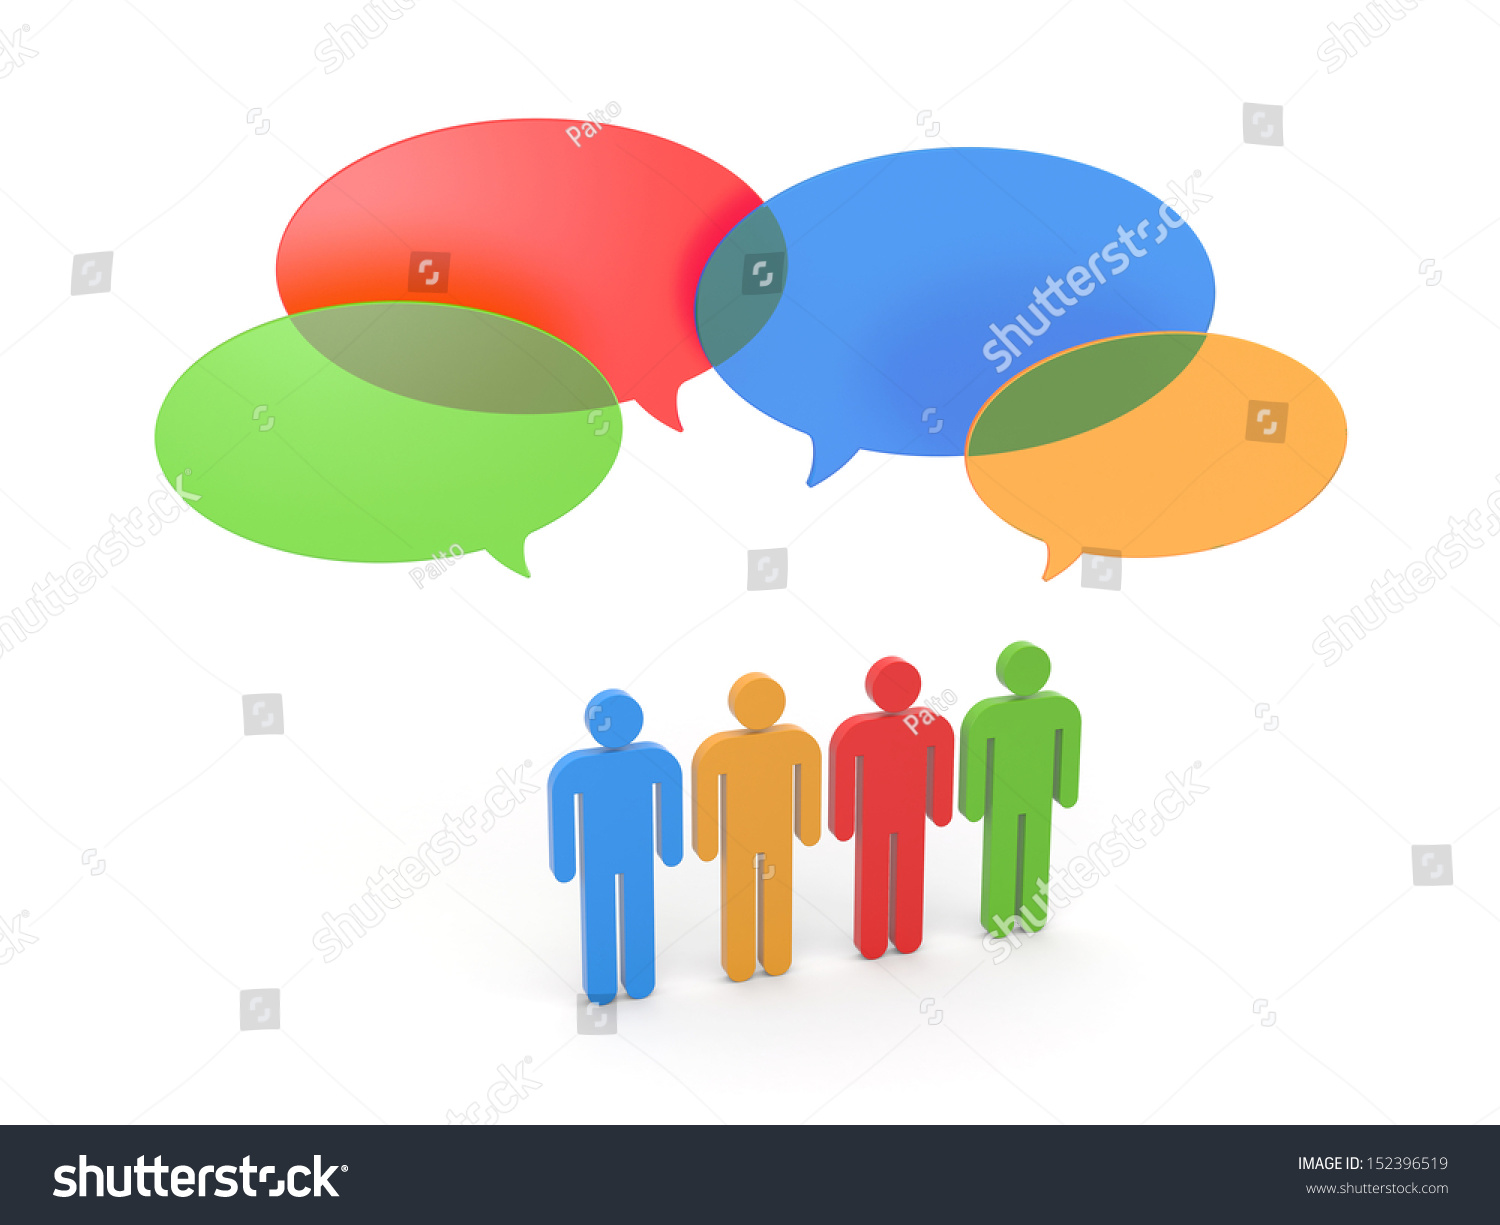 Exchange Of Opinions. Gossip Stock Photo 152396519 : Shutterstock